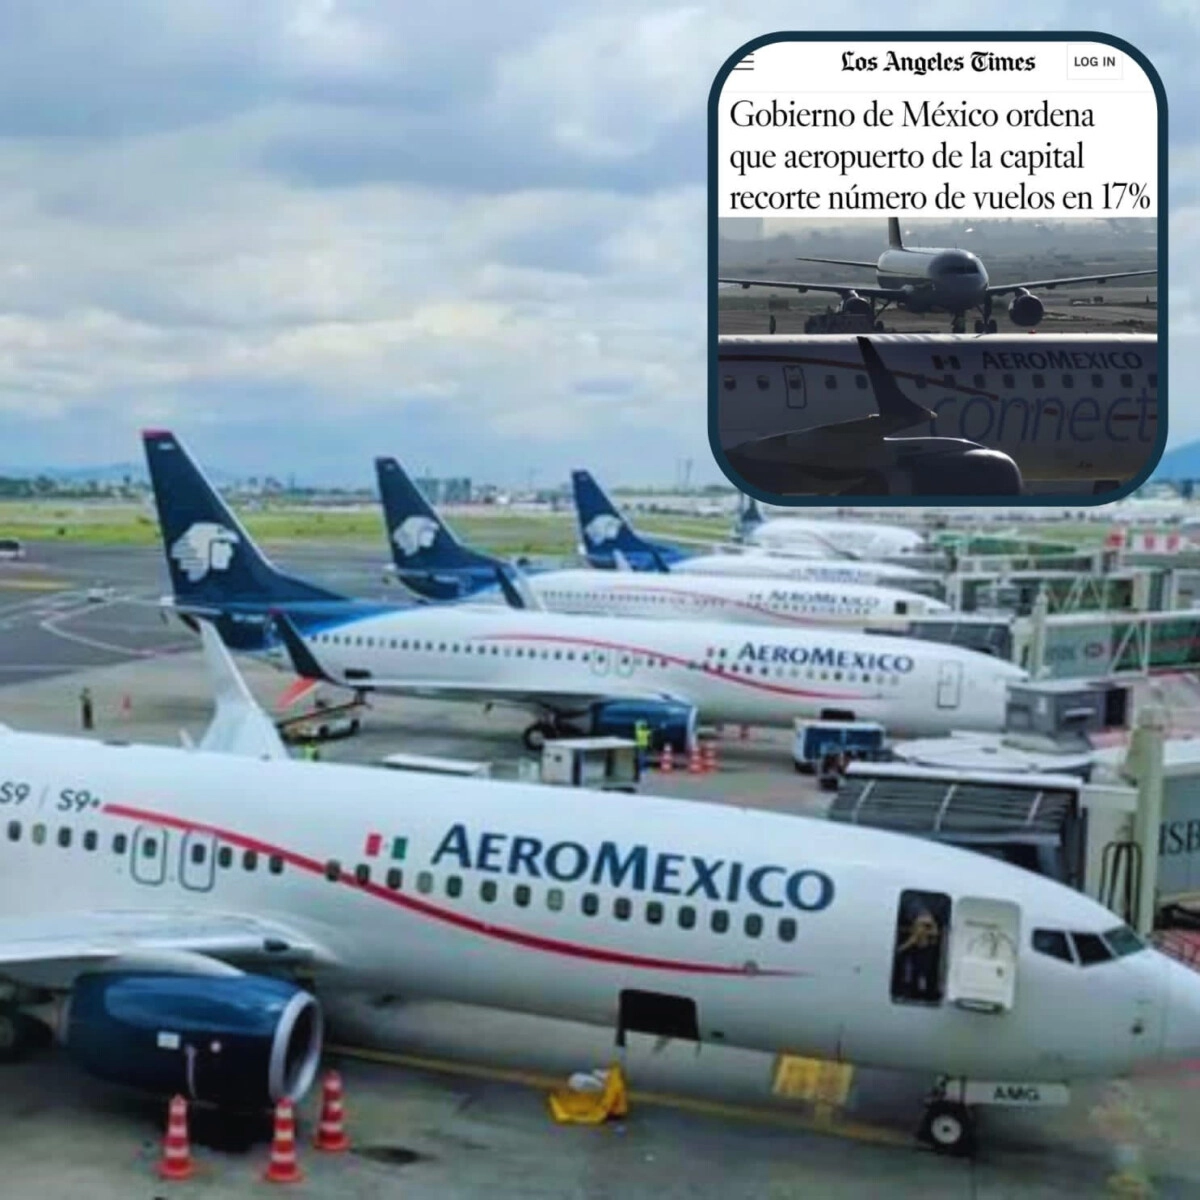 La Cámara Nacional de Aerotransportes de México señaló que esto perjudicará a pasajeros, aerolíneas y trabajadores del sector por la cancelación masiva de vuelos 01